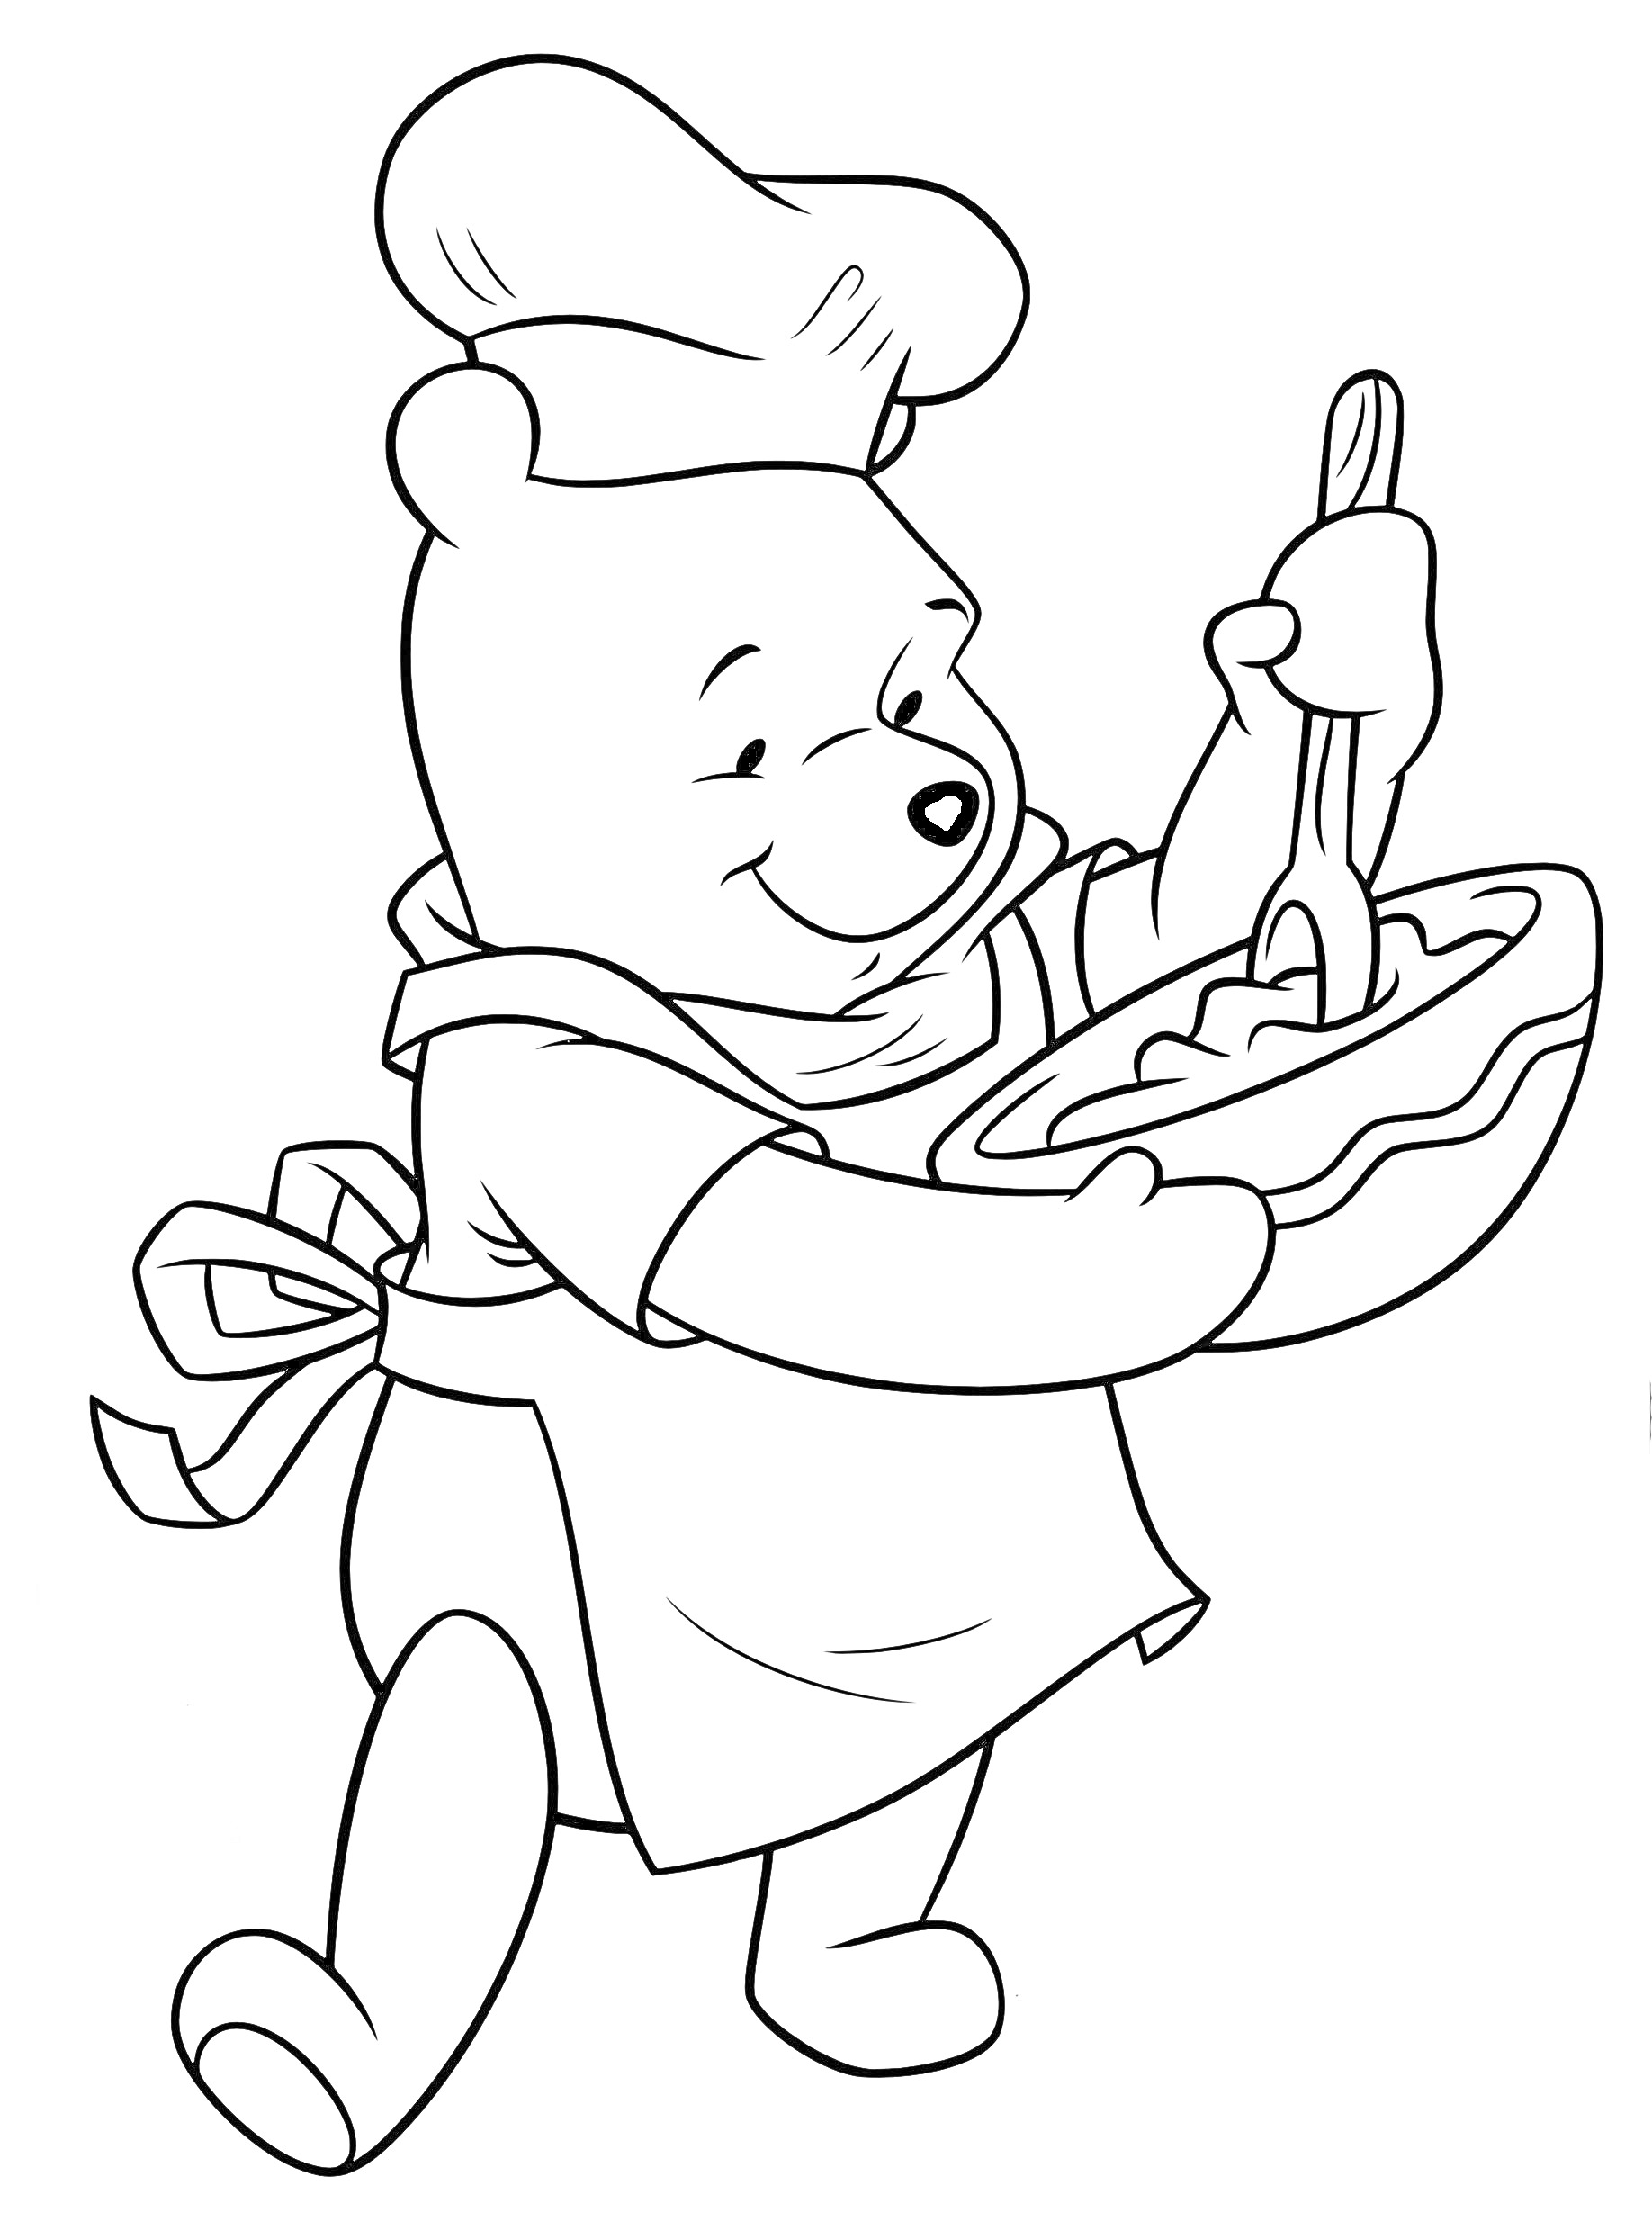 Медвежонок-повар в фартуке и колпаке, мешающий тесто в миске